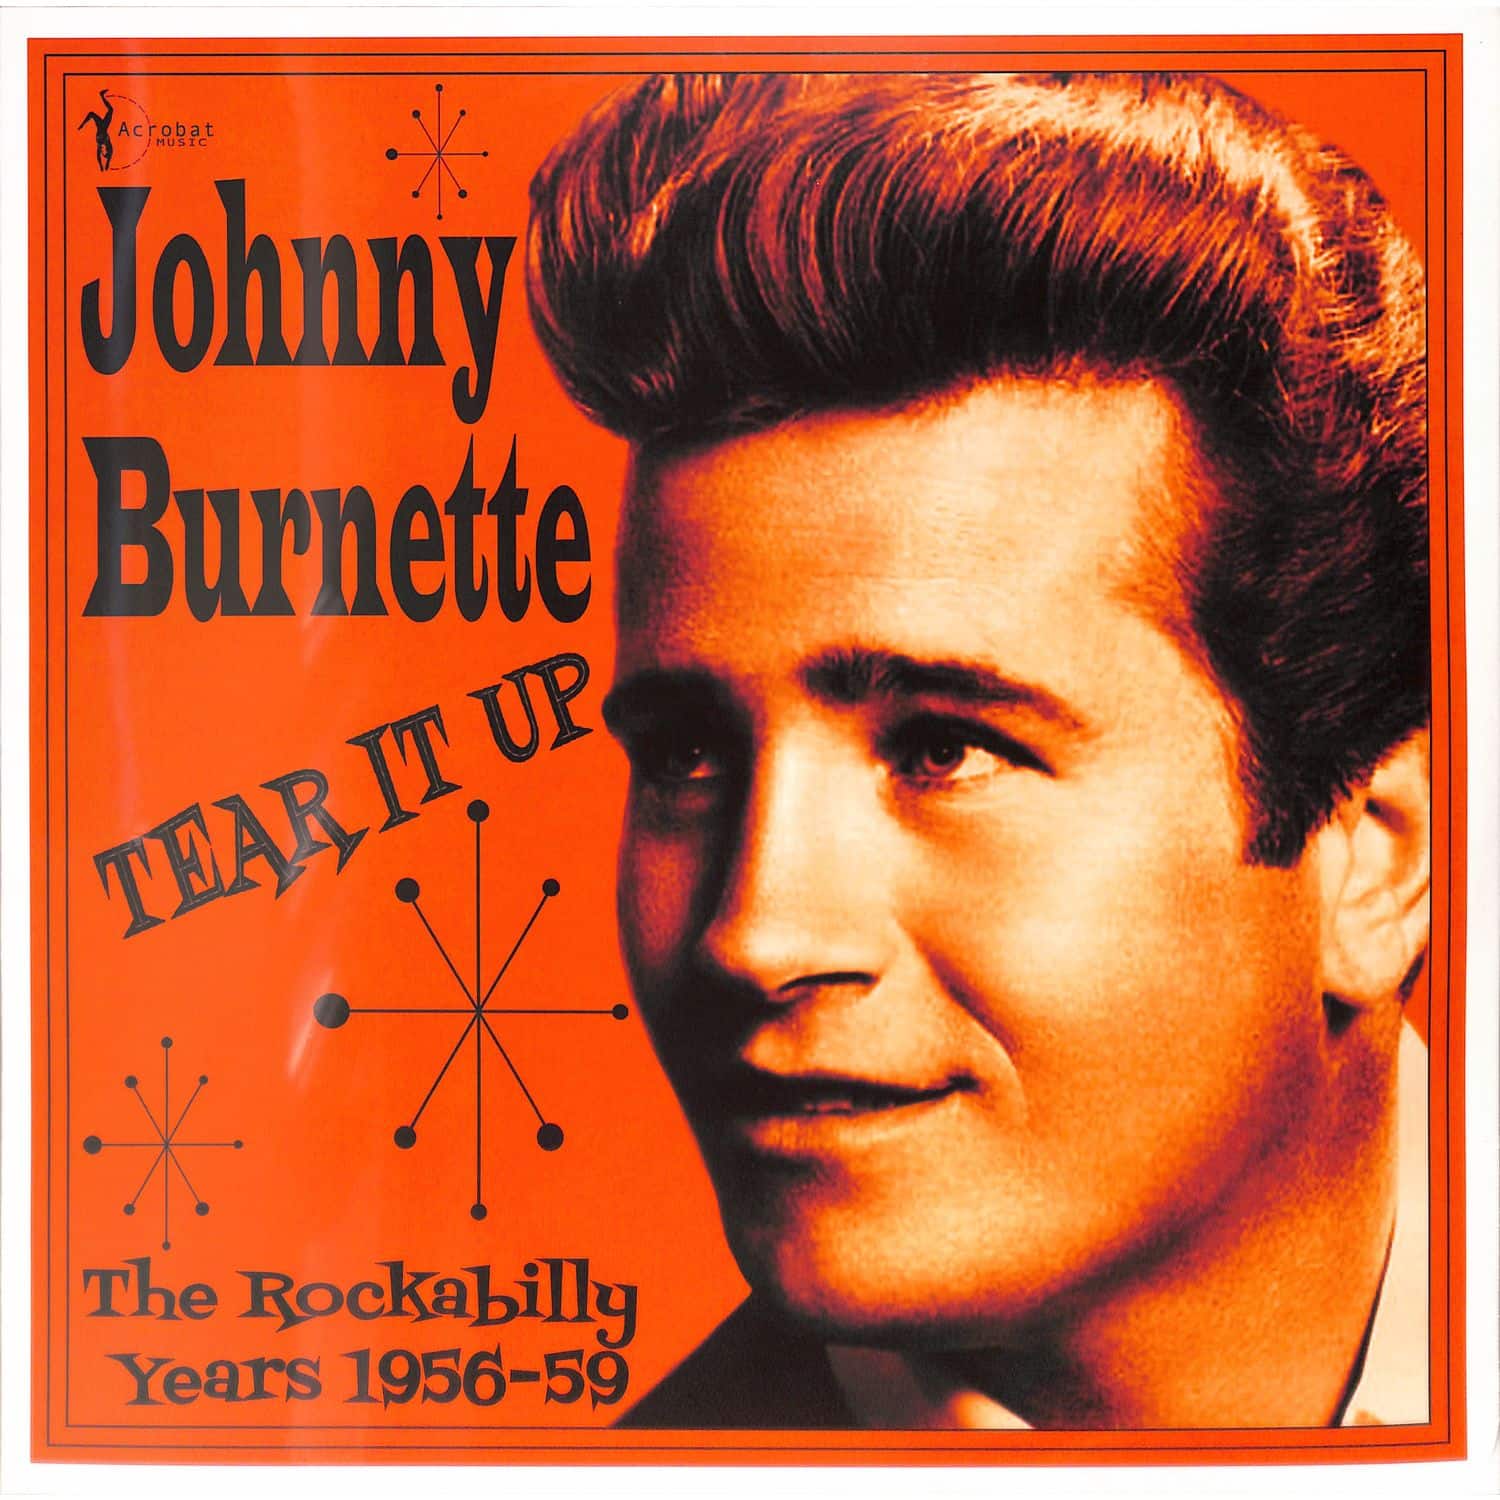 Johnny Burnette - TEAR IT UP 